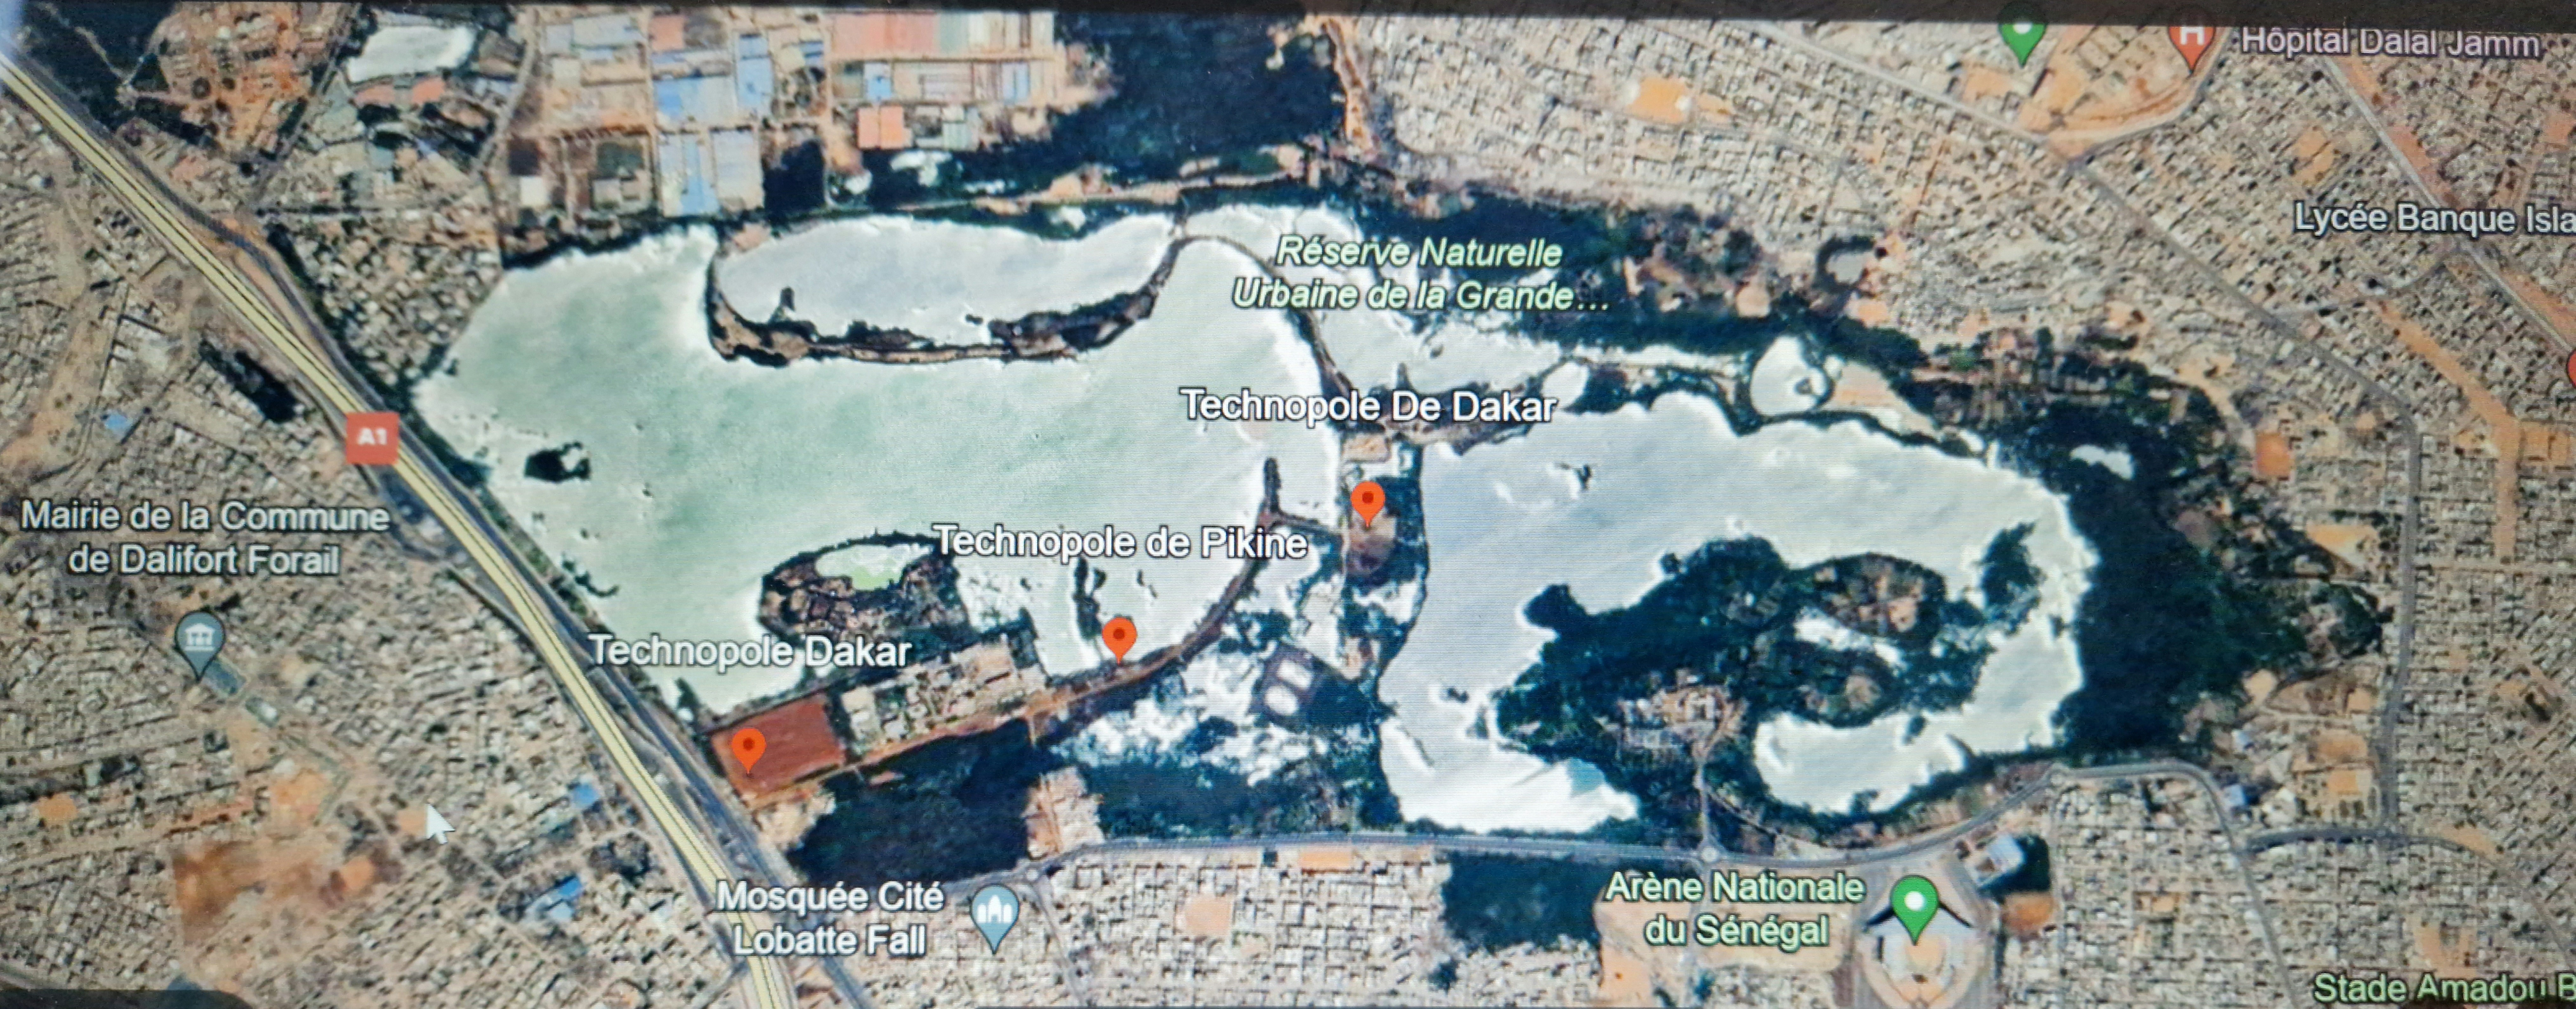 Carte Google du Technopole et de la Grande Niaye de Dakar-Pikine, Sénégal, incluant la Réserve Naturelle Urbaine de la Grande Niaye. 